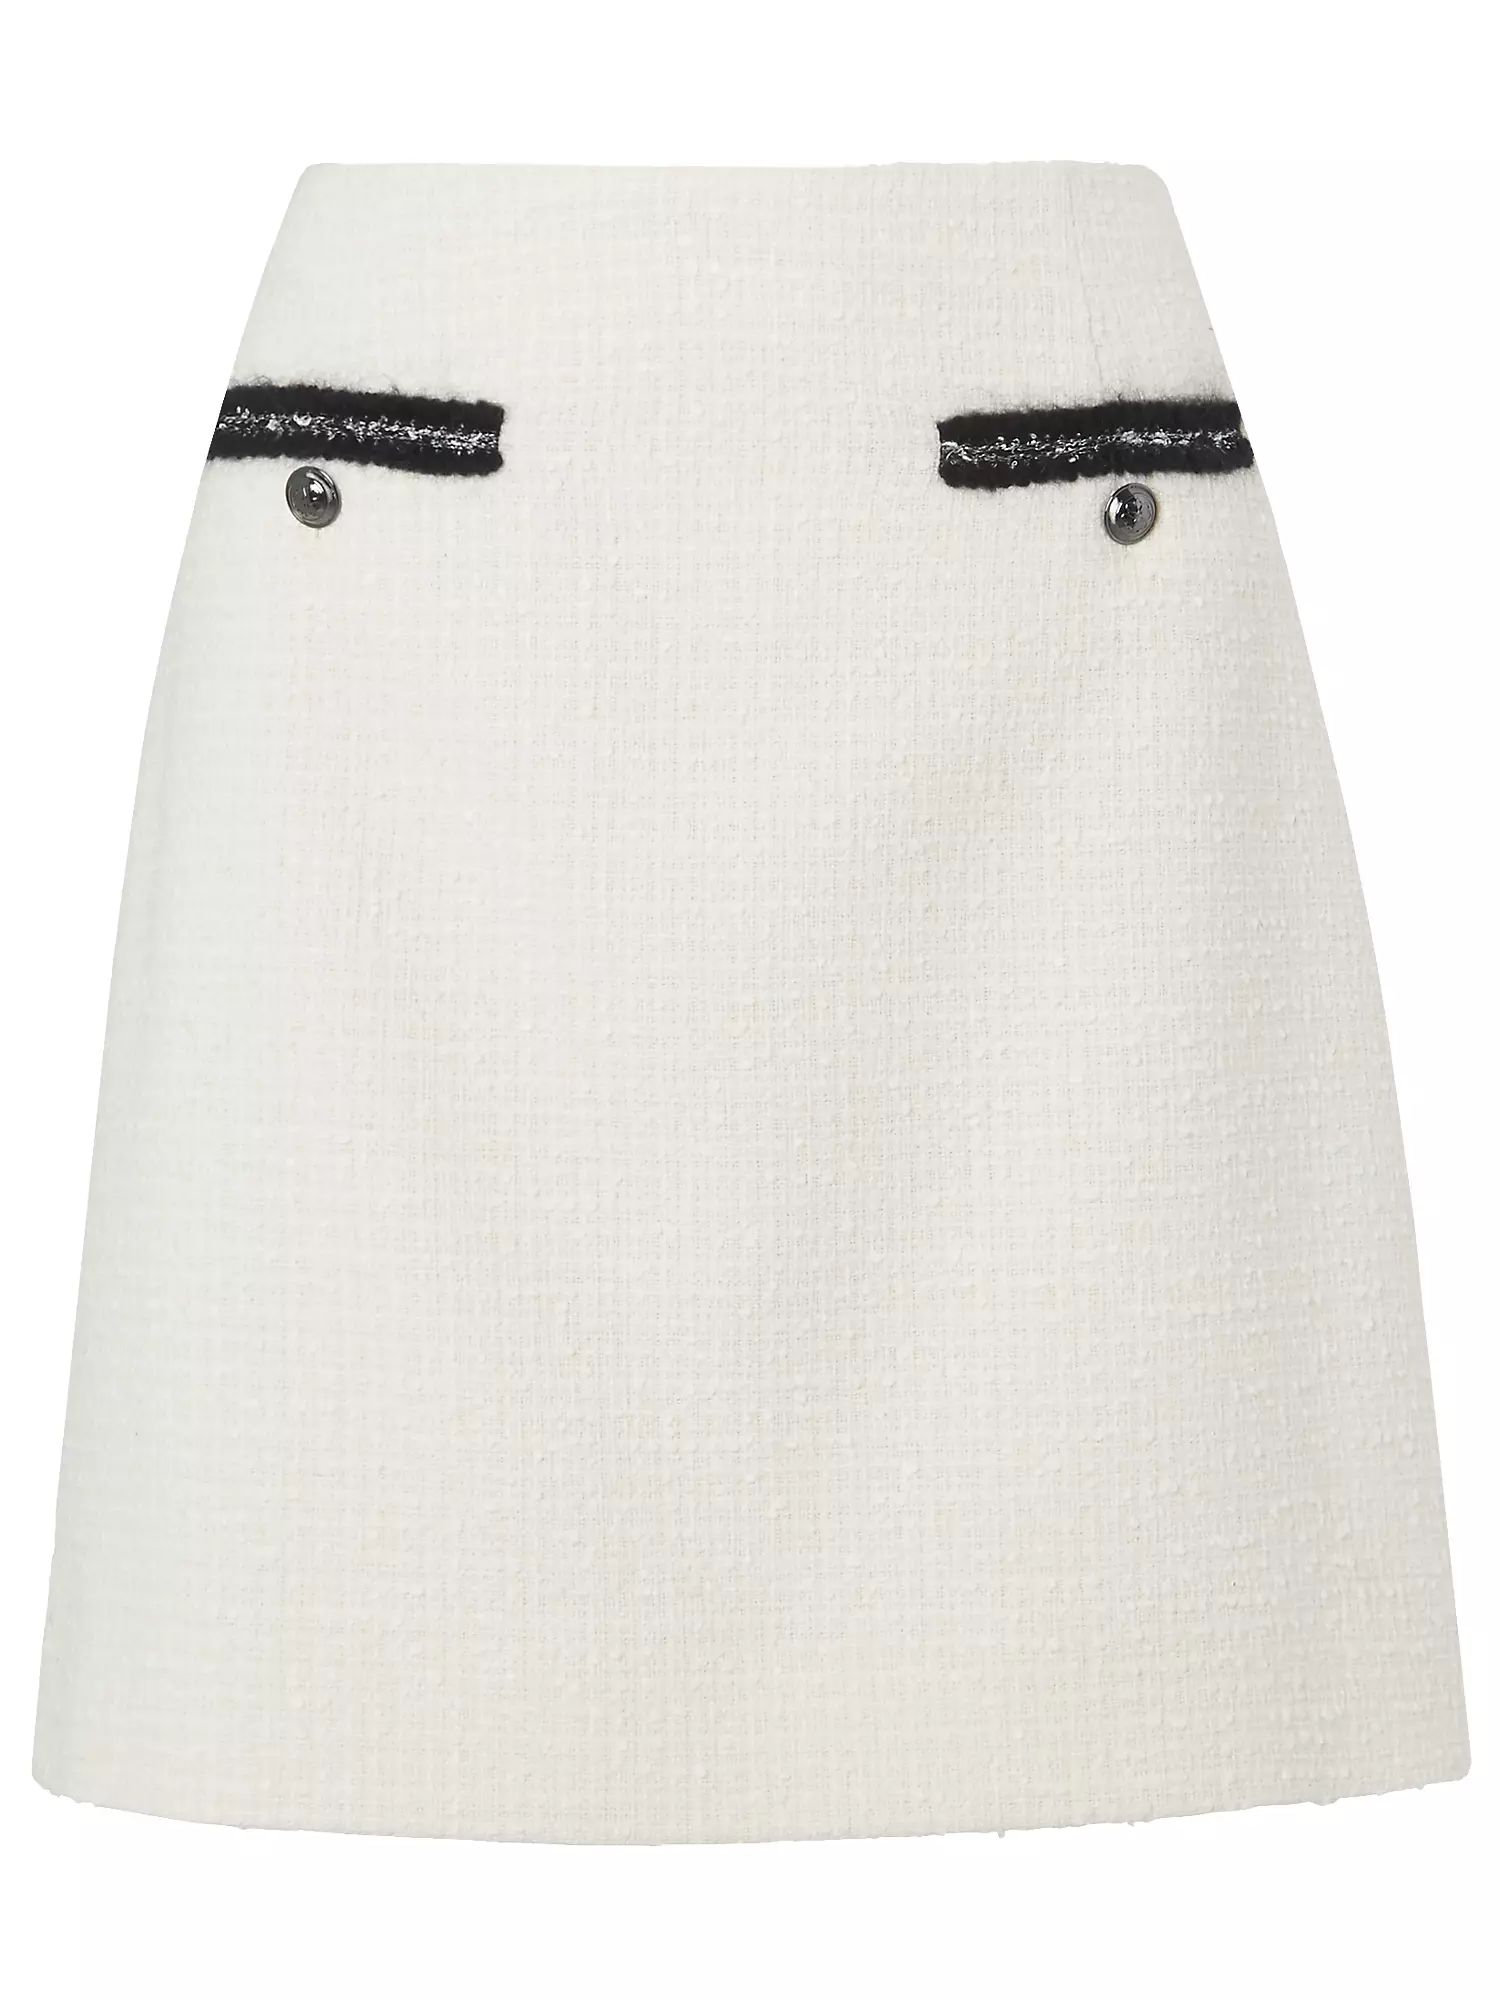 L.K.Bennett Charlee Skirt, Cream | John Lewis (UK)